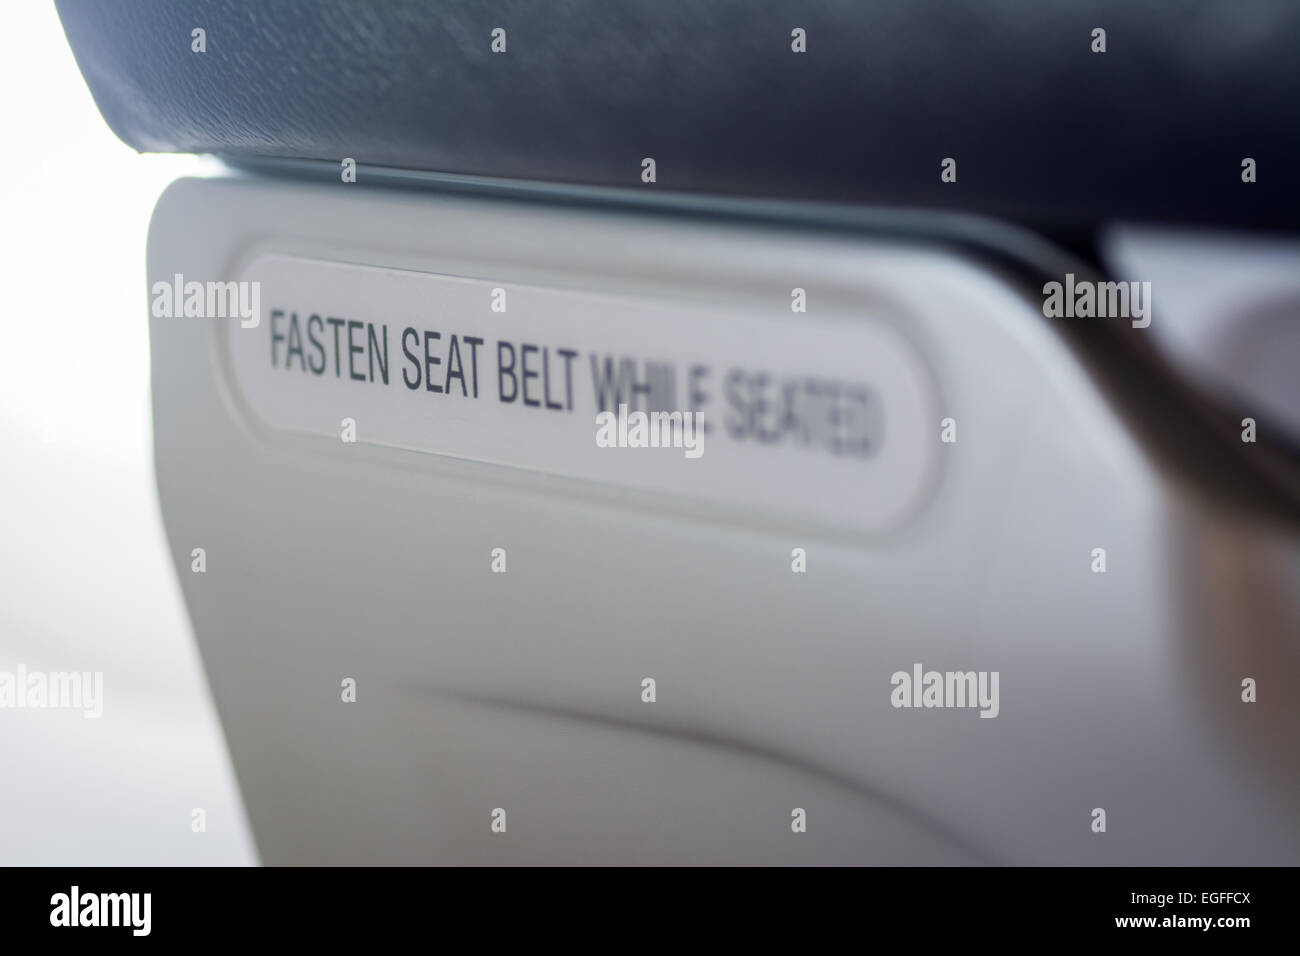 Befestigen Sie Sicherheitsgurt während sitzen Hinweis auf Rückseite des kommerziellen Flugzeugsitz Stockfoto